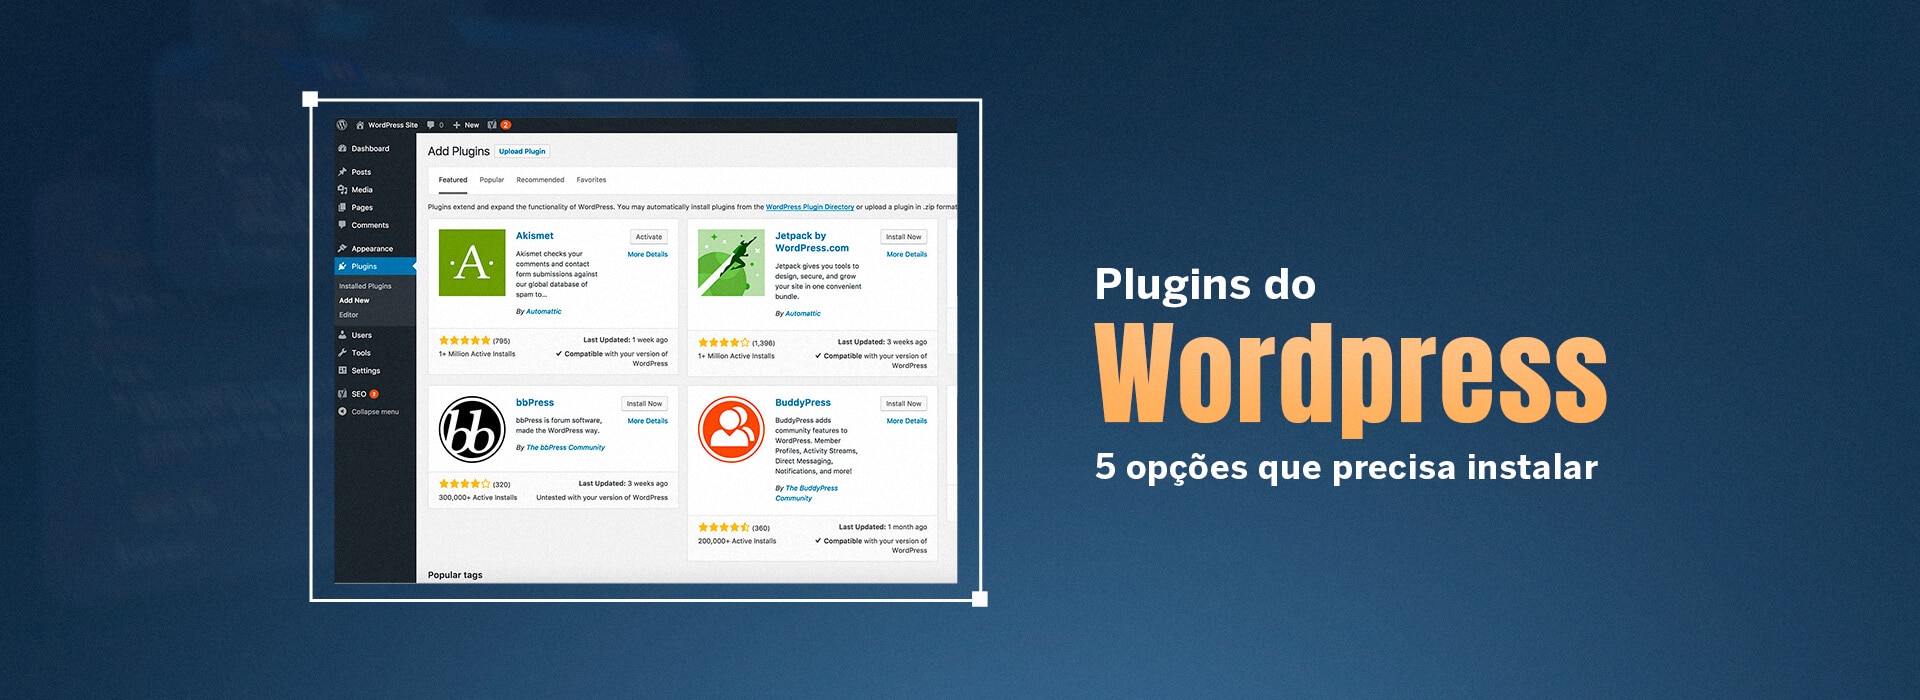 Plugins do WordPress – 5 opções que precisa instalar